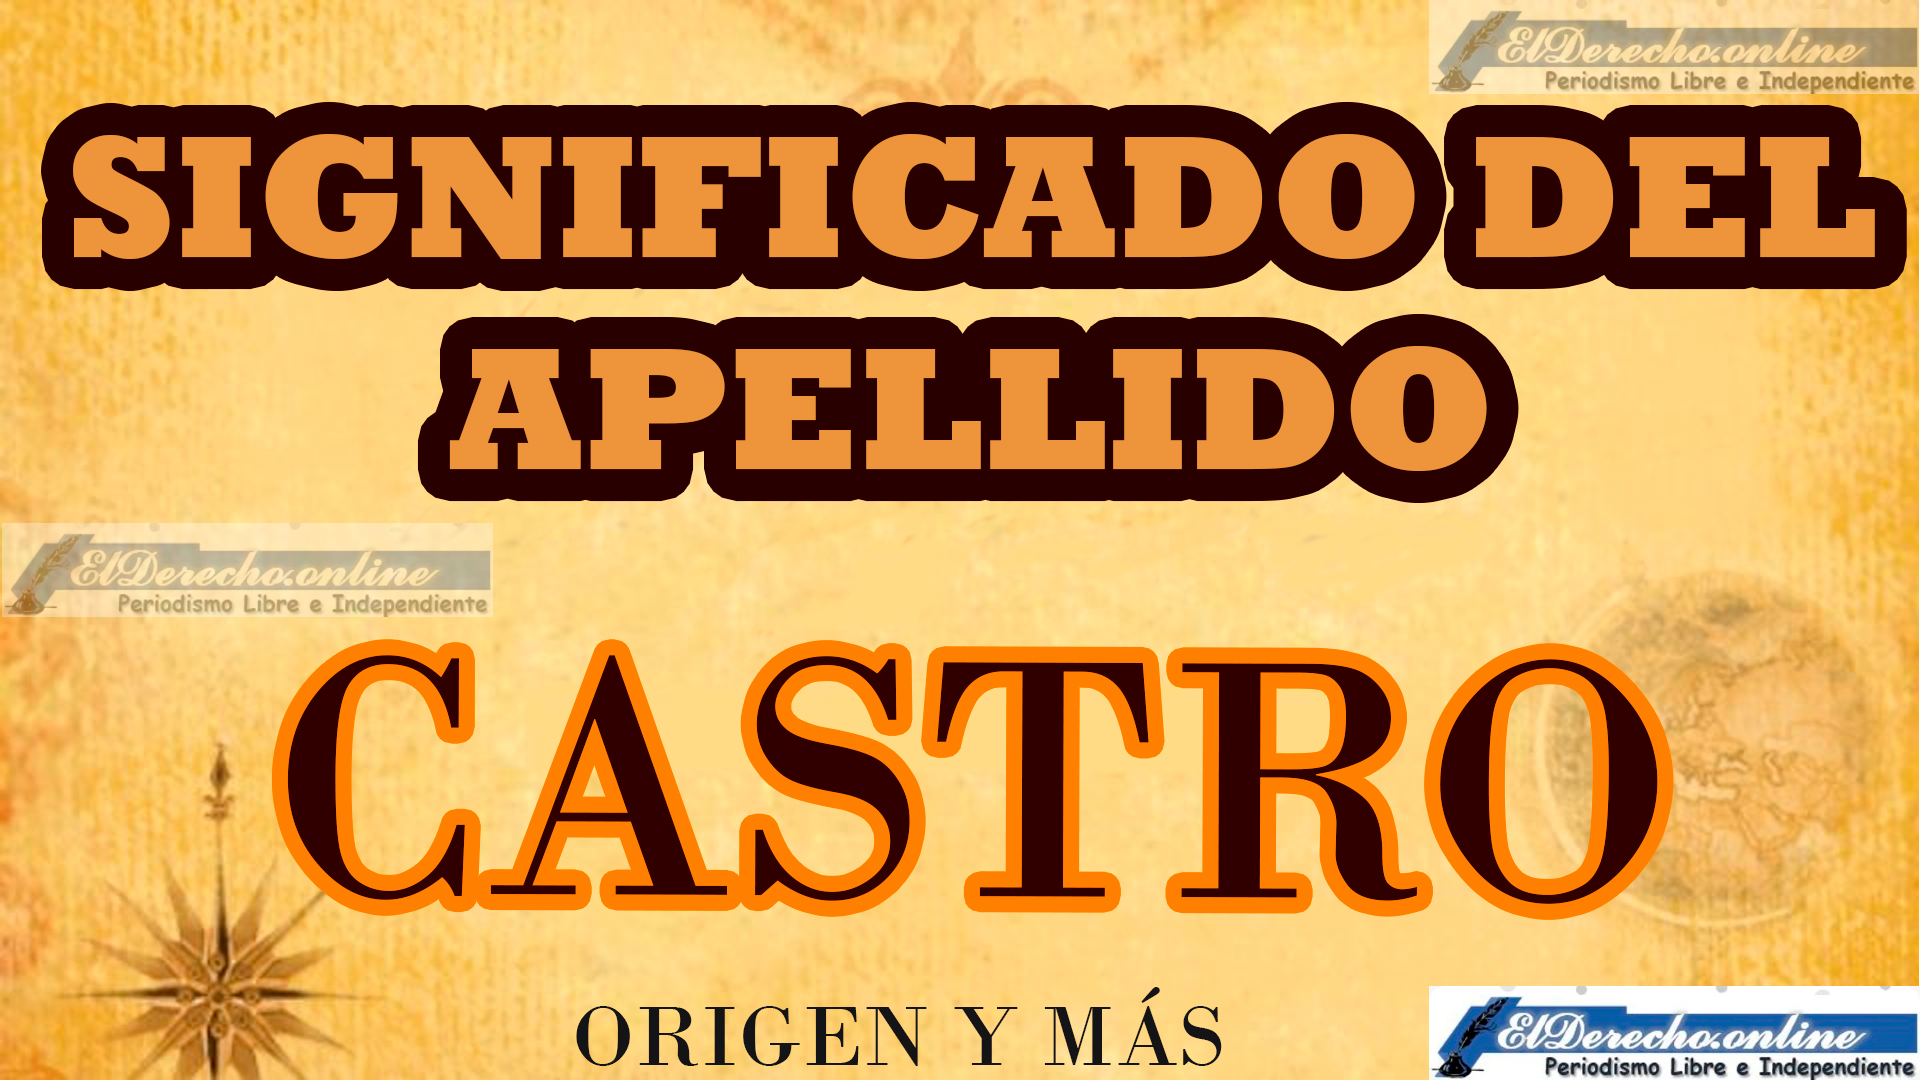 Significado del apellido Castro, Origen y más